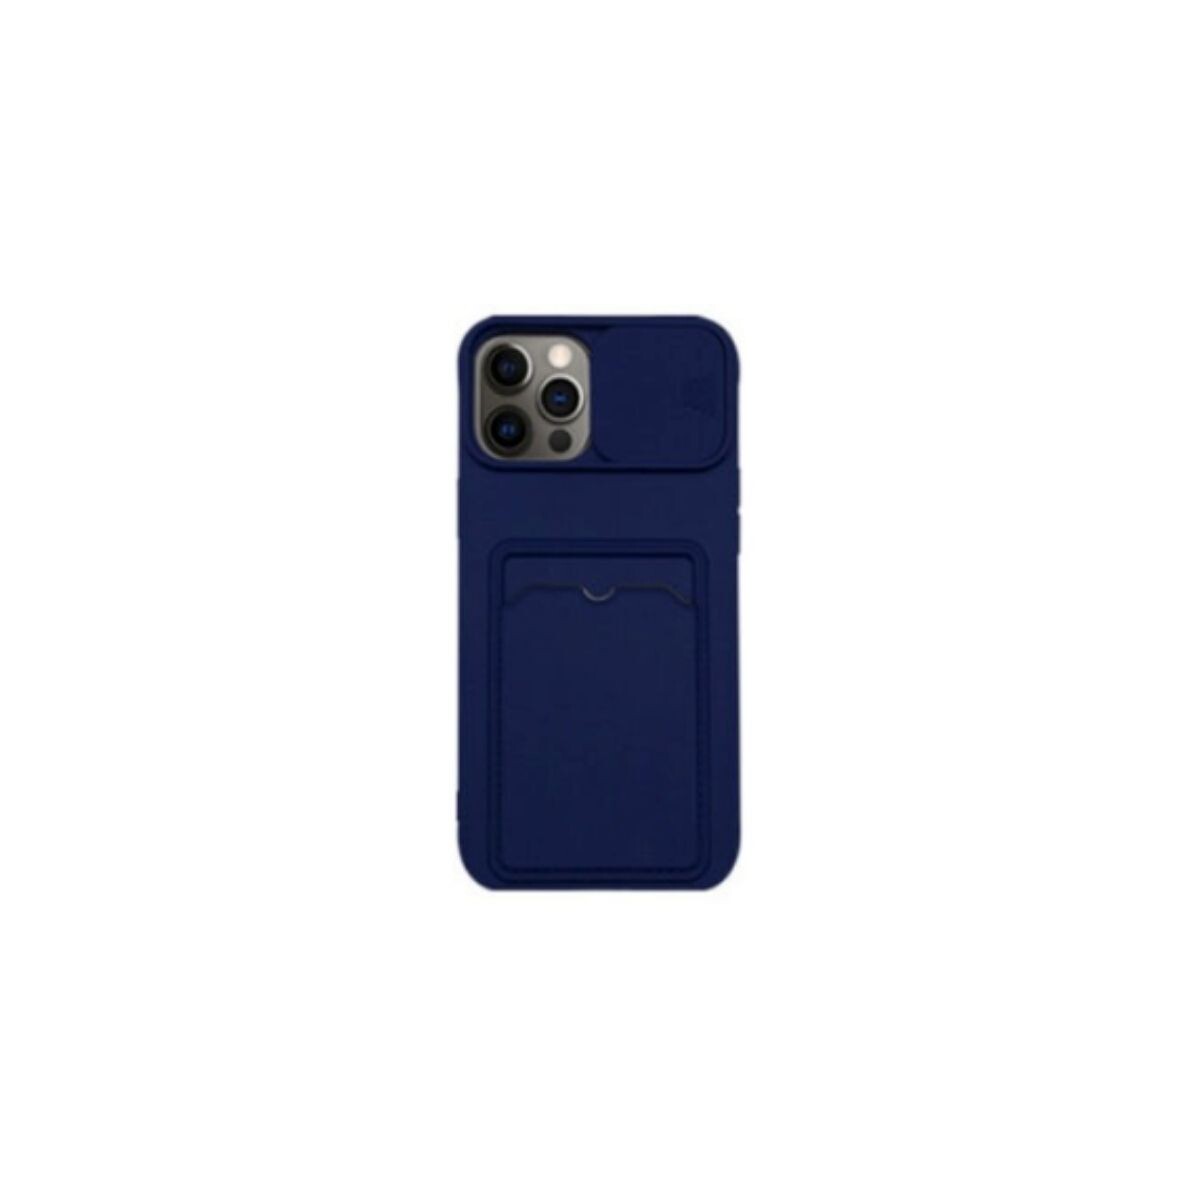 Protector cubre cámara para Iphone 11 azul 